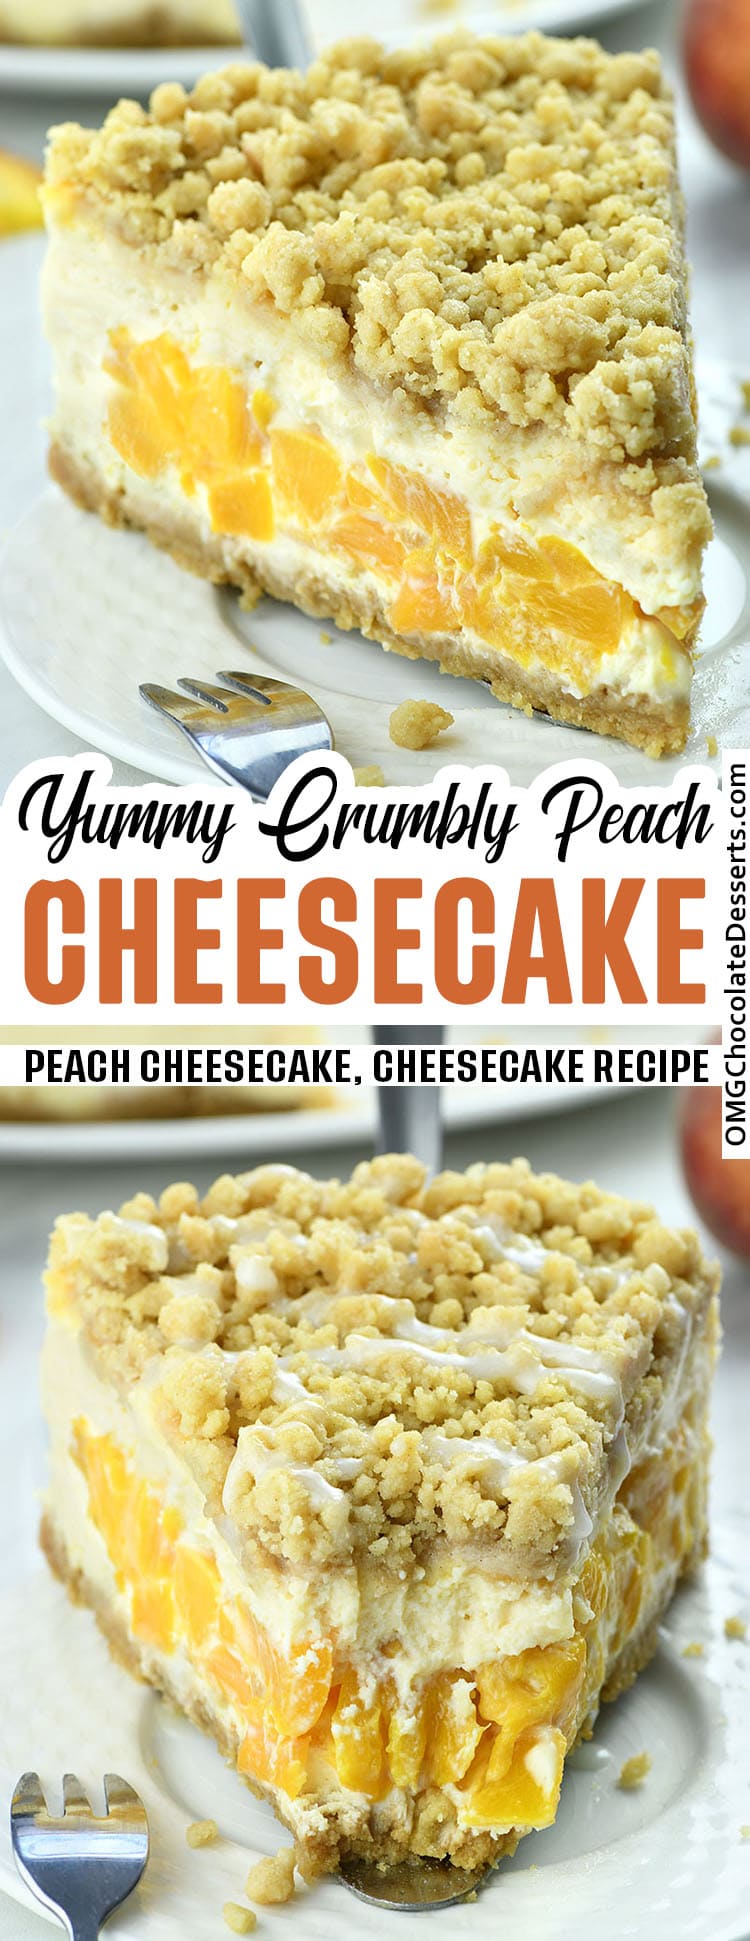 Peach Cheesecake